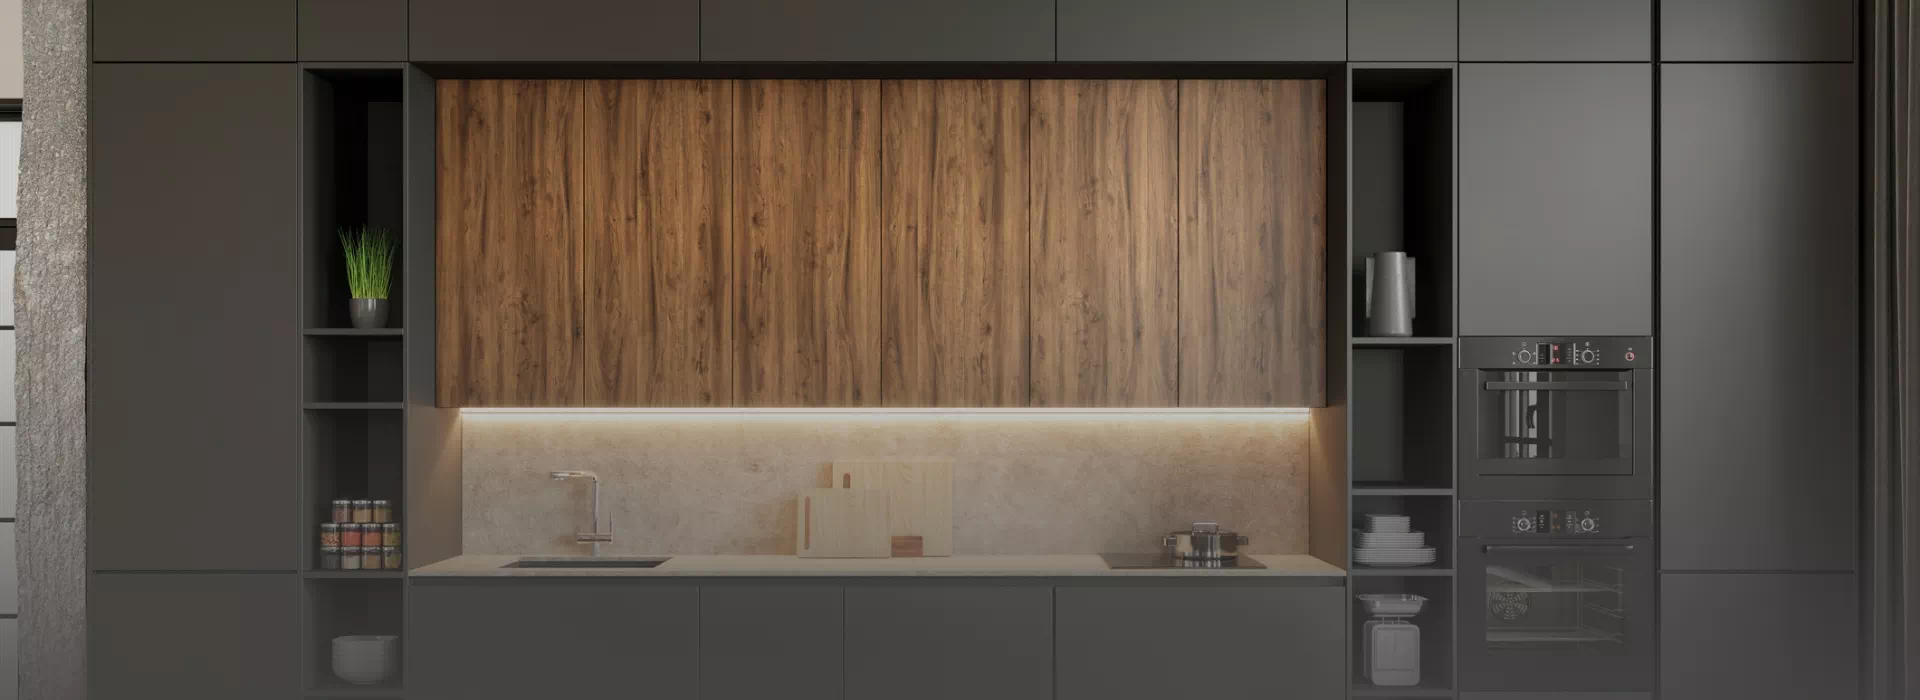 drewniana płyta na ścianie w kuchni